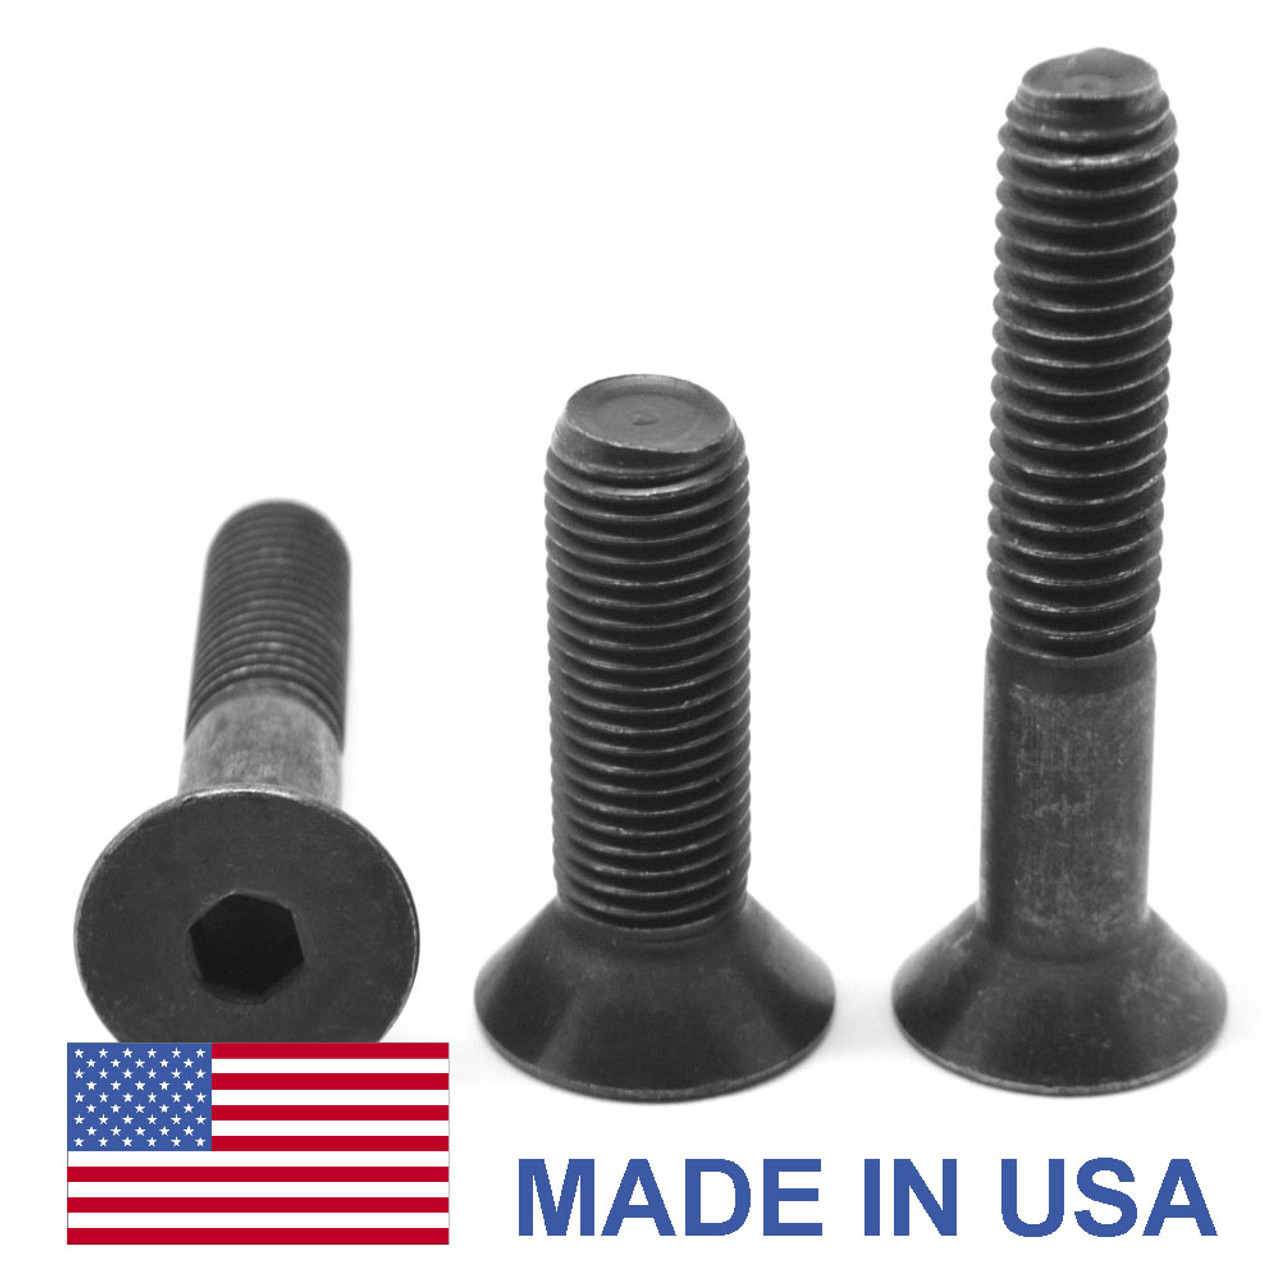 M8 x 1.25 x 20 MM Coarse Thread Socket Flat Head Cap Screw - USA Alloy Steel Thermal Black Oxide